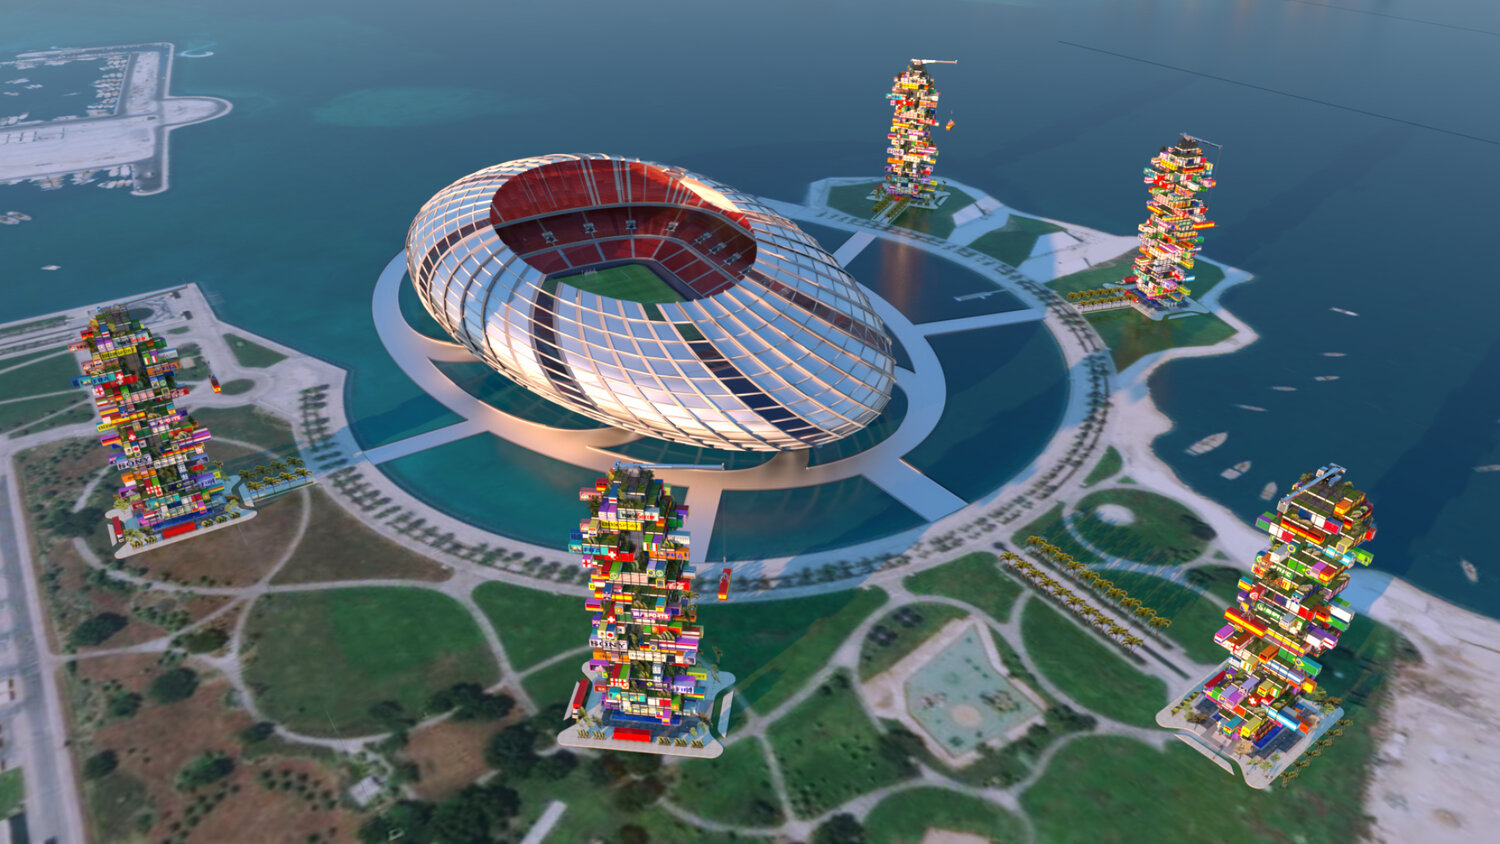 Hình ảnh một sân vận động được xây dựng hiện đại ở Qatar